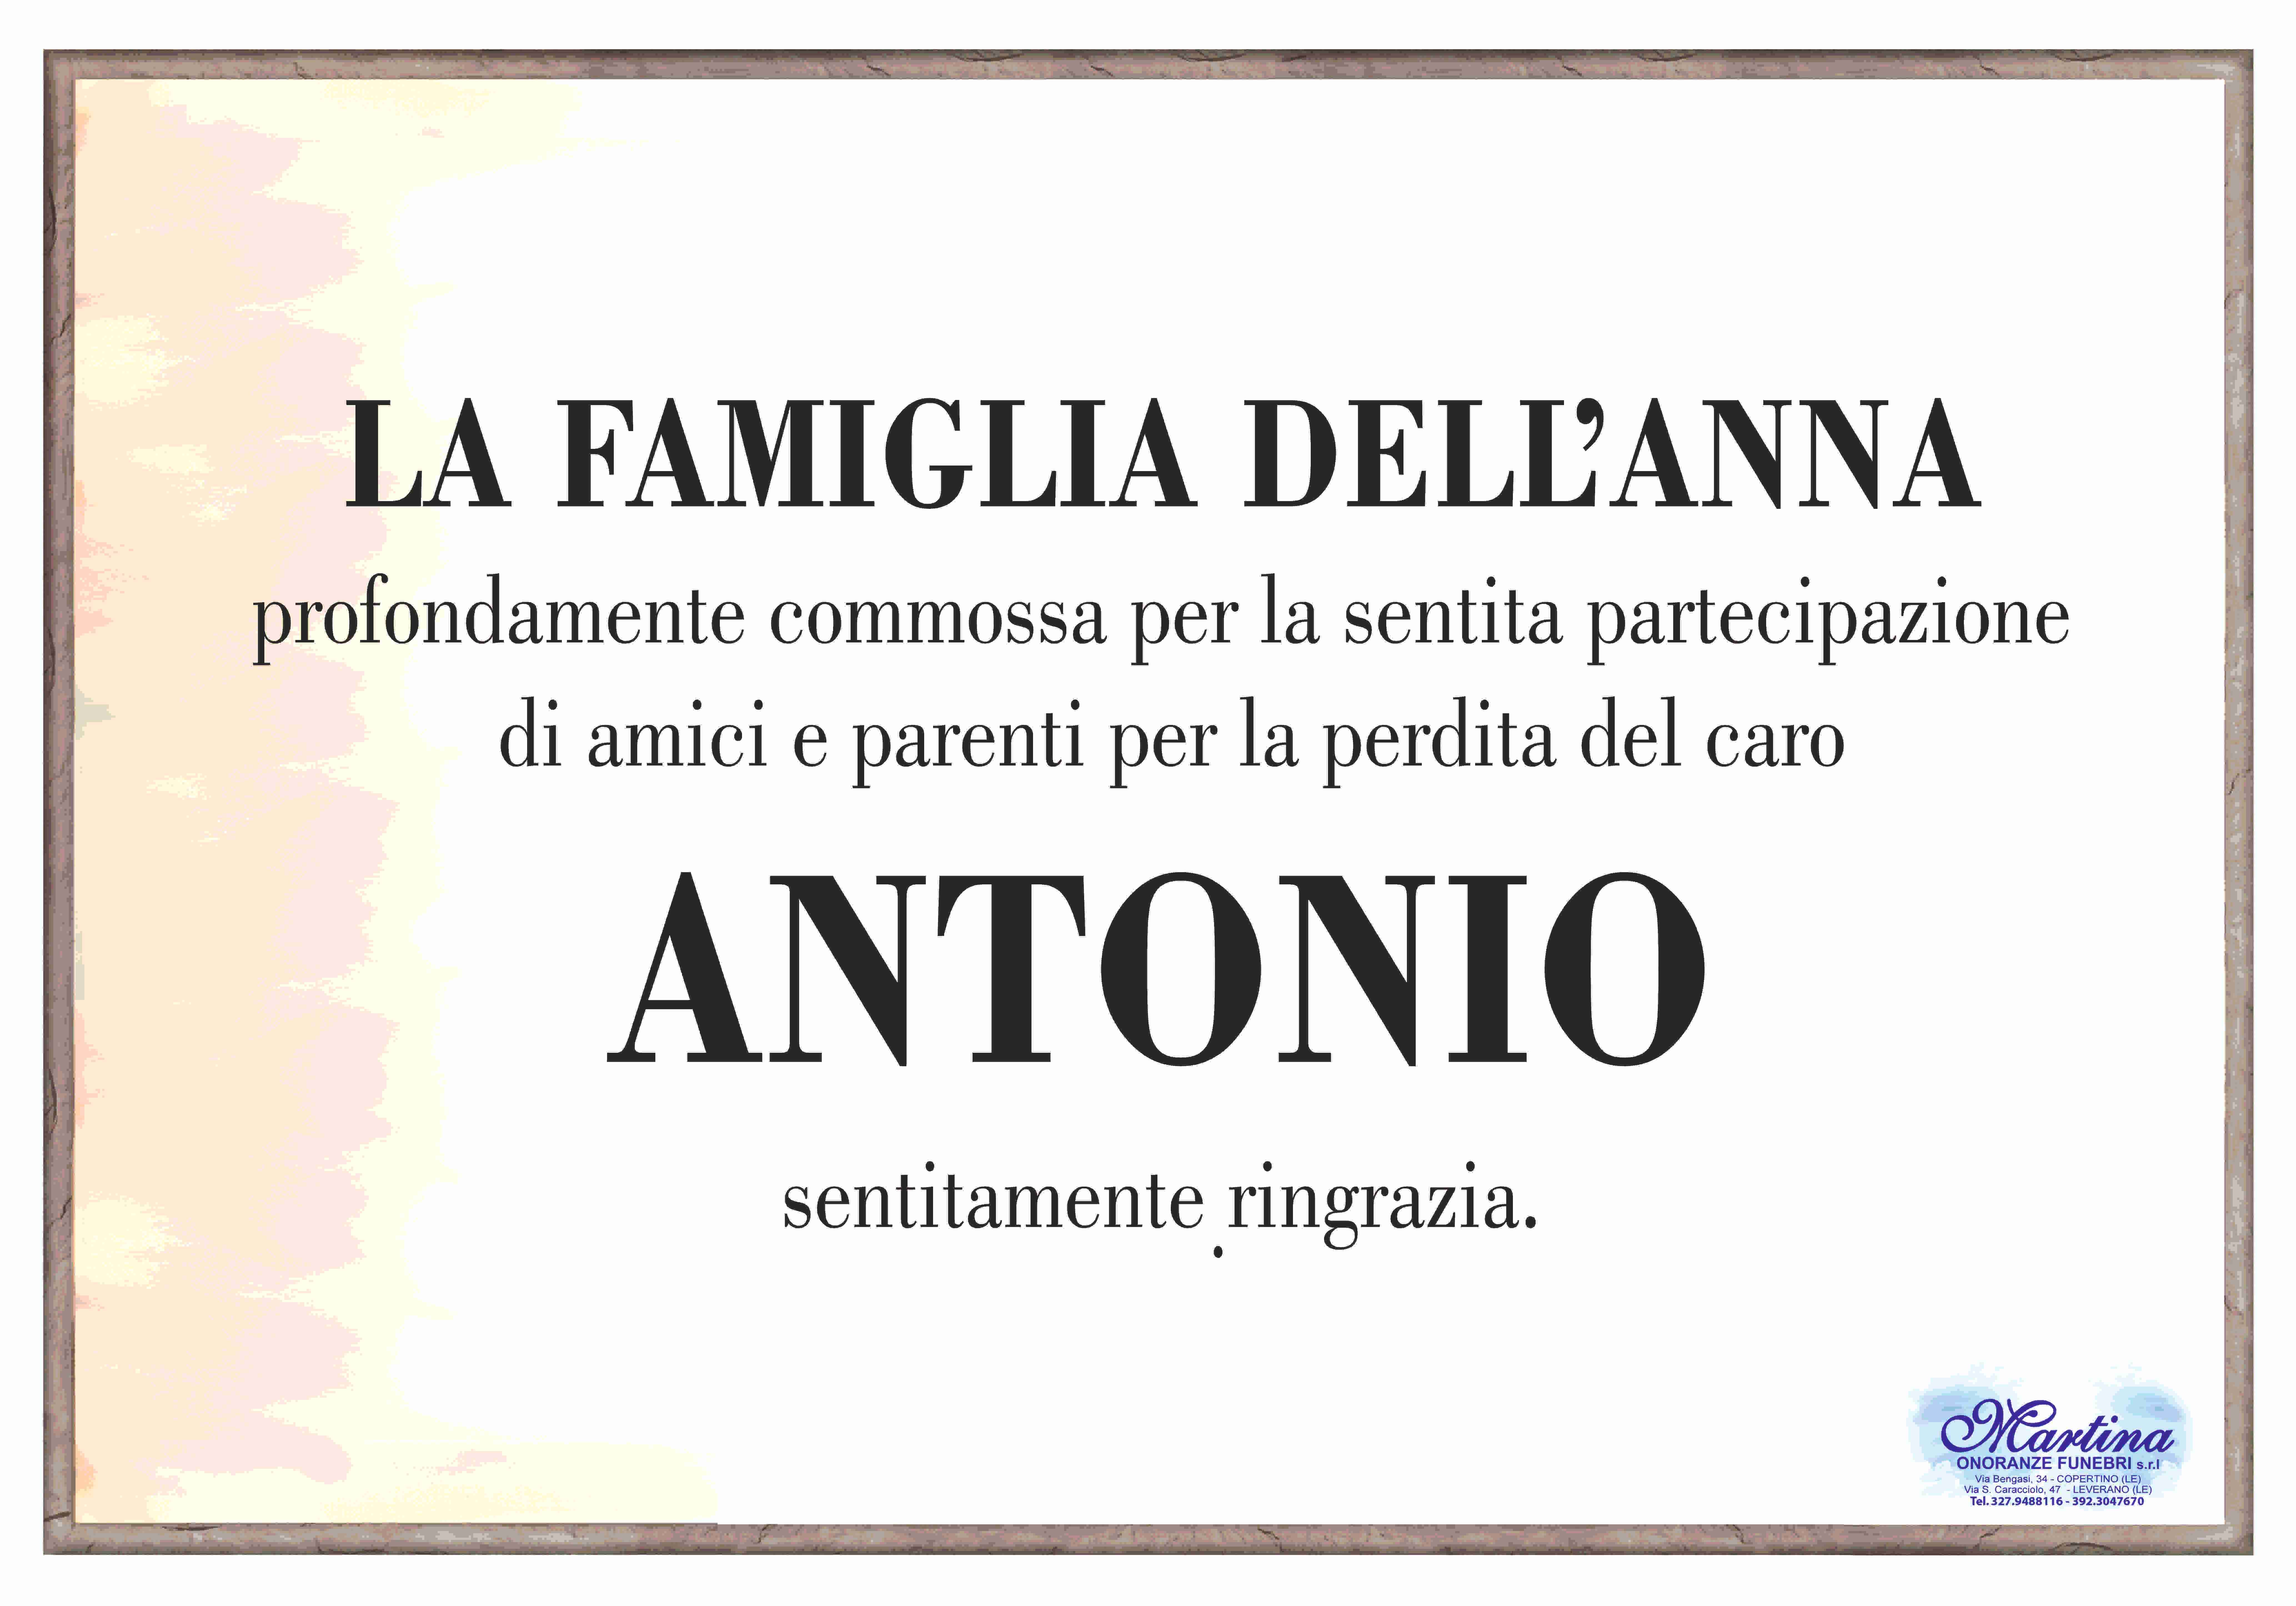 Antonio Dell'Anna